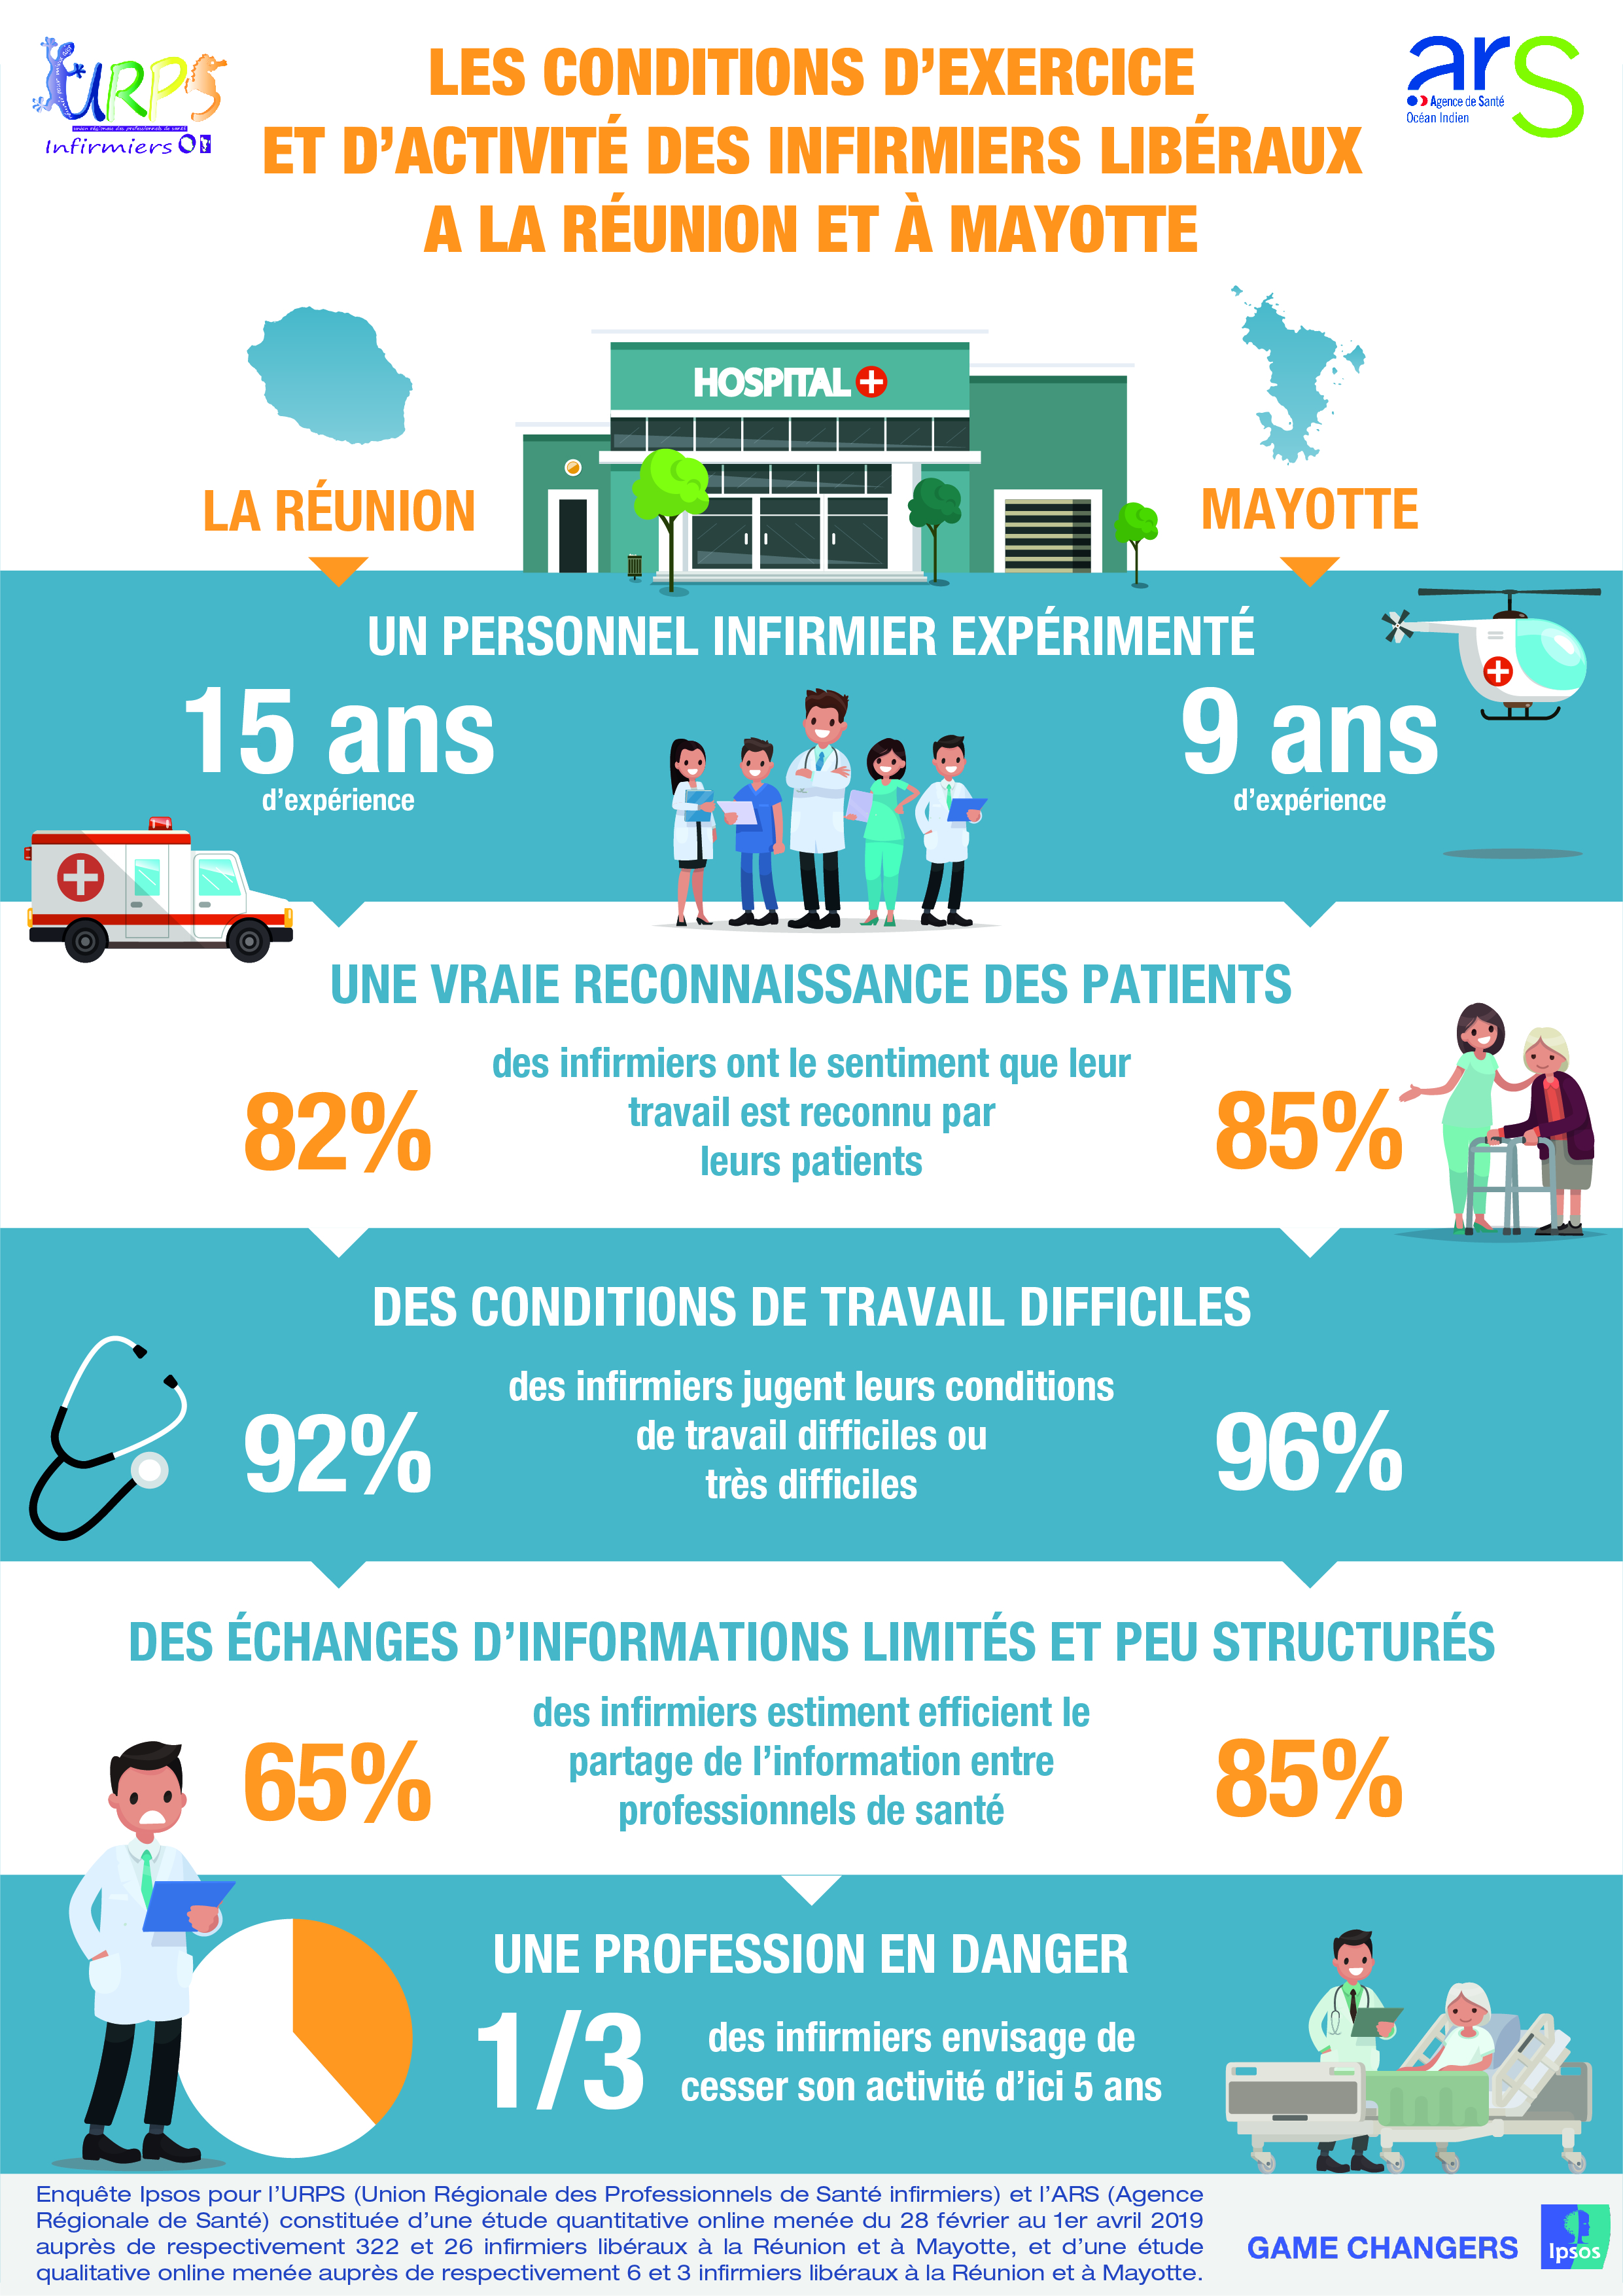 Les résultats de notre enquête sur les conditions d’exercice des infirmiers libéraux à La Réunion et à Mayotte